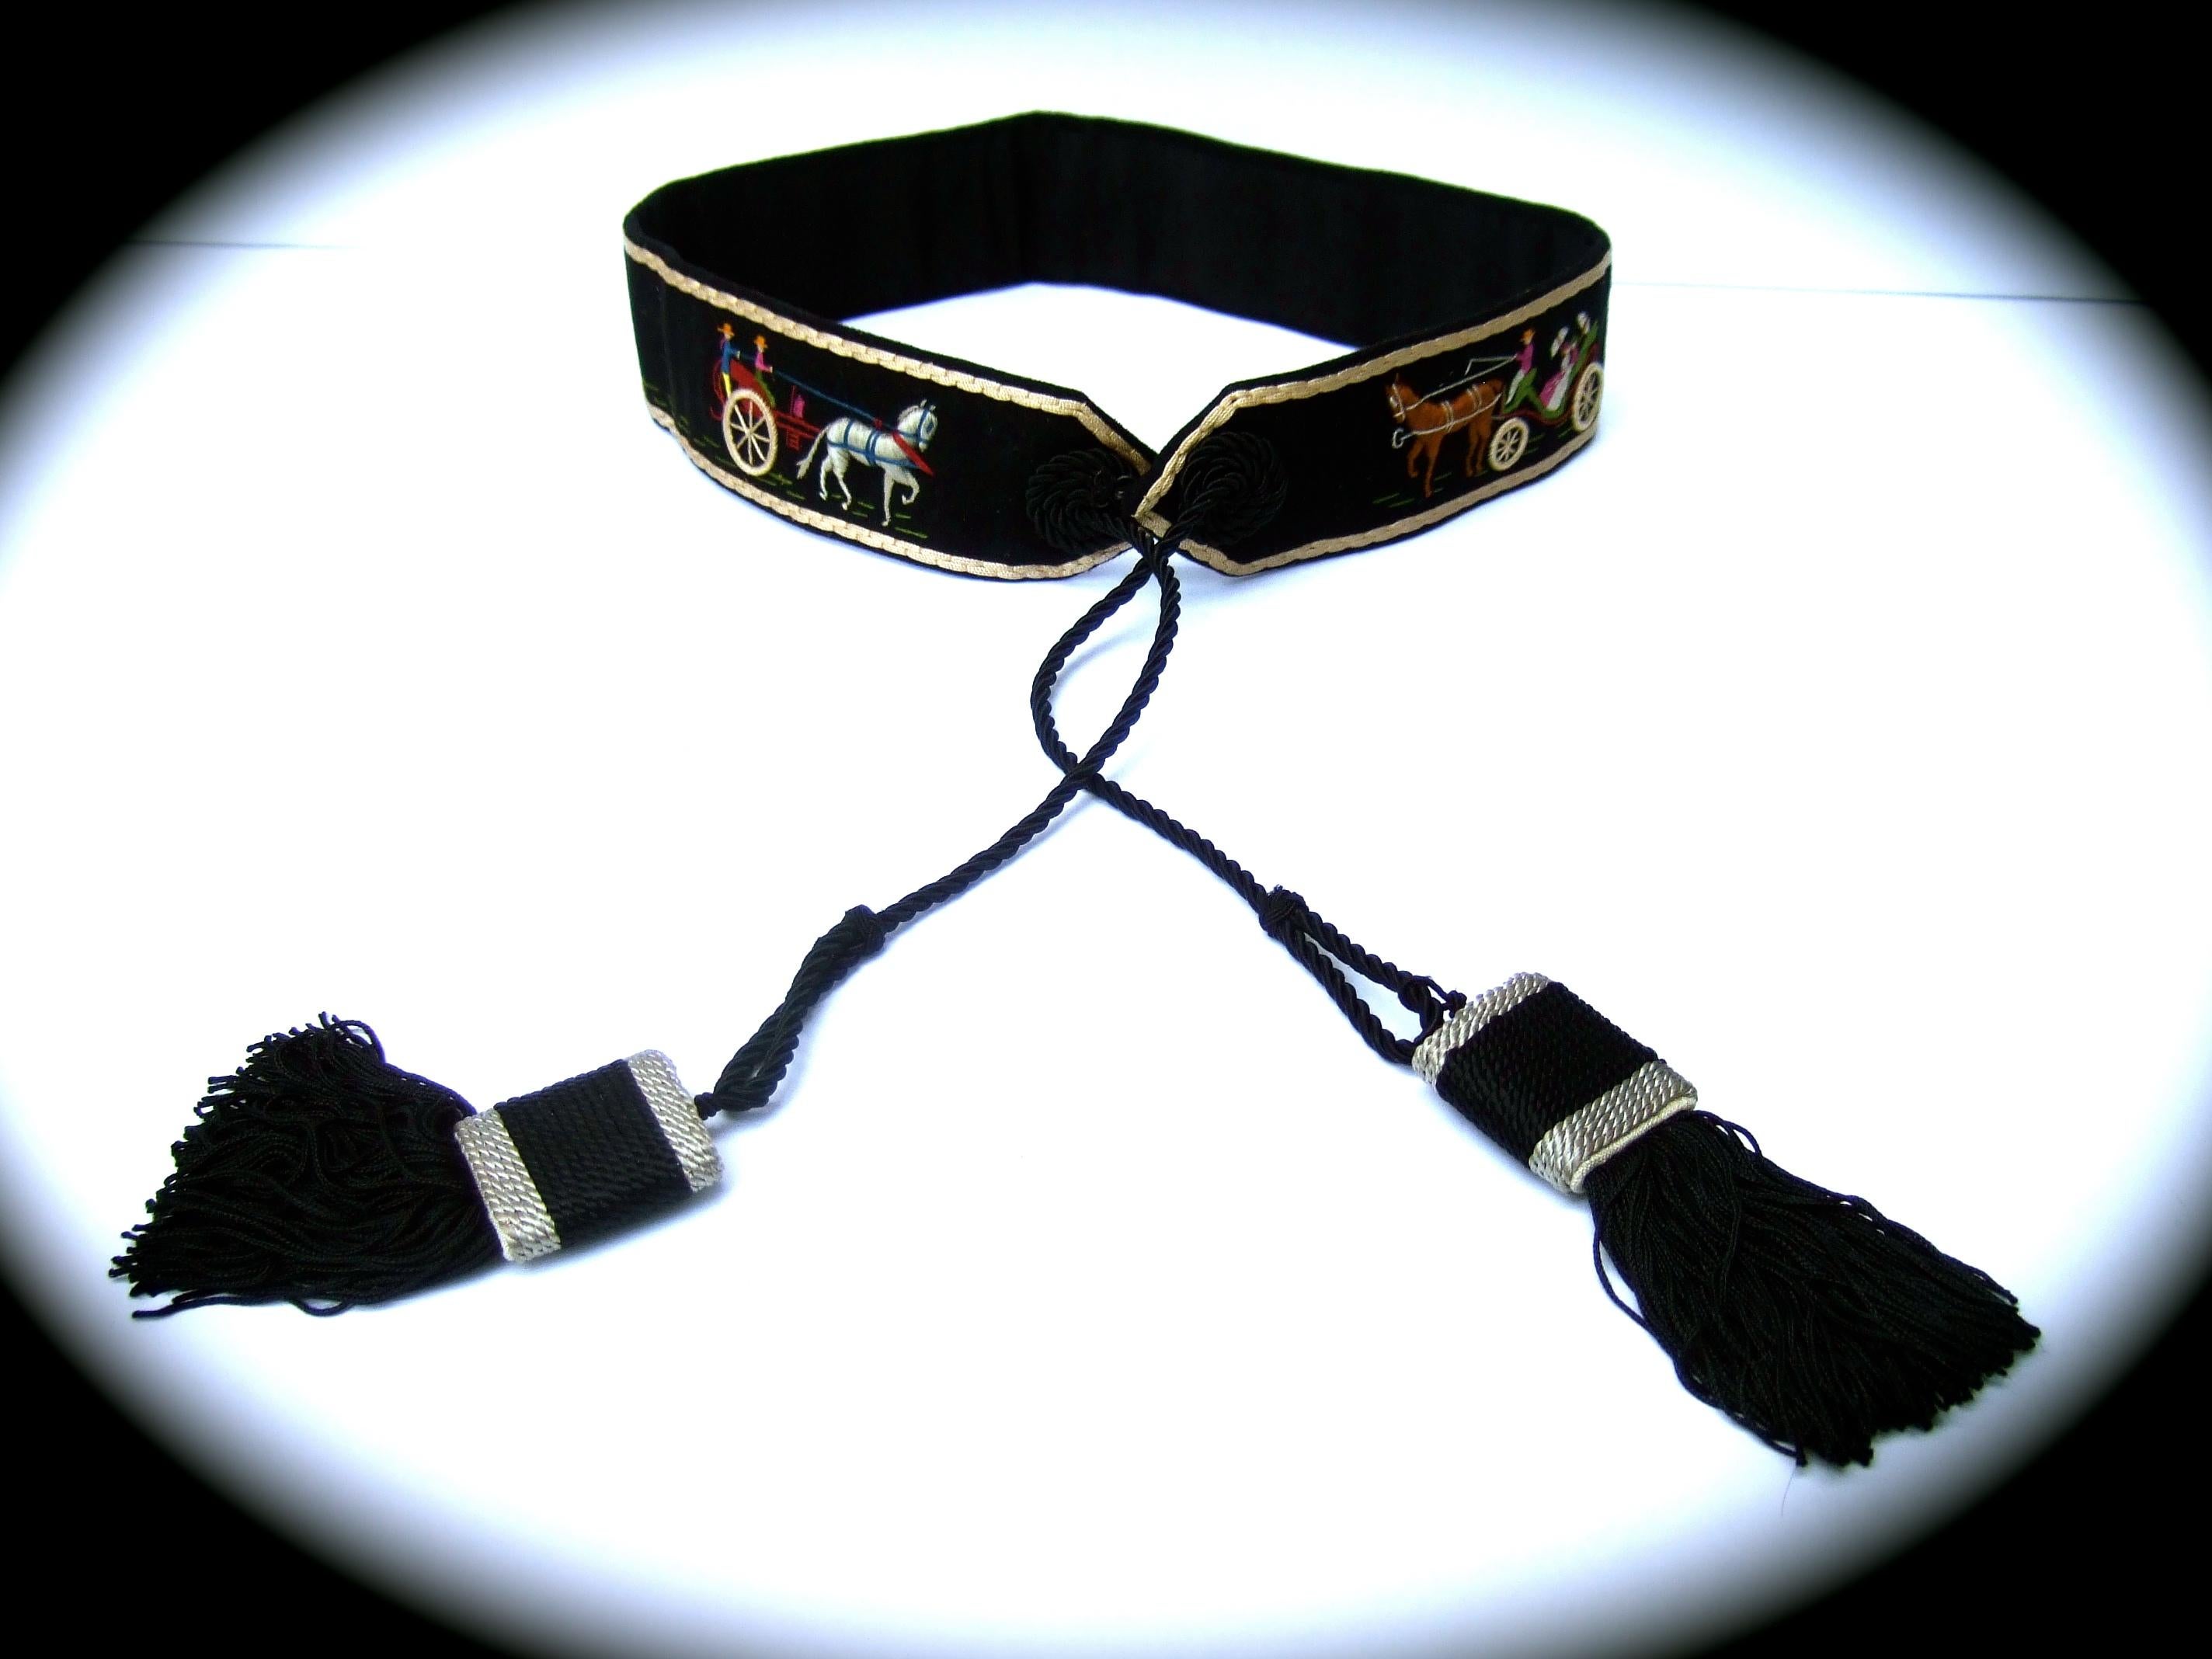 Hermes Paris Rare ceinture à pompon brodée en tissu artisanal fait à la main, c.C. années 1970 
La ceinture unique en laine noire est ornée de trois broderies individuelles.
des scènes mettant en scène des voitures à cheval. La partie inférieure est